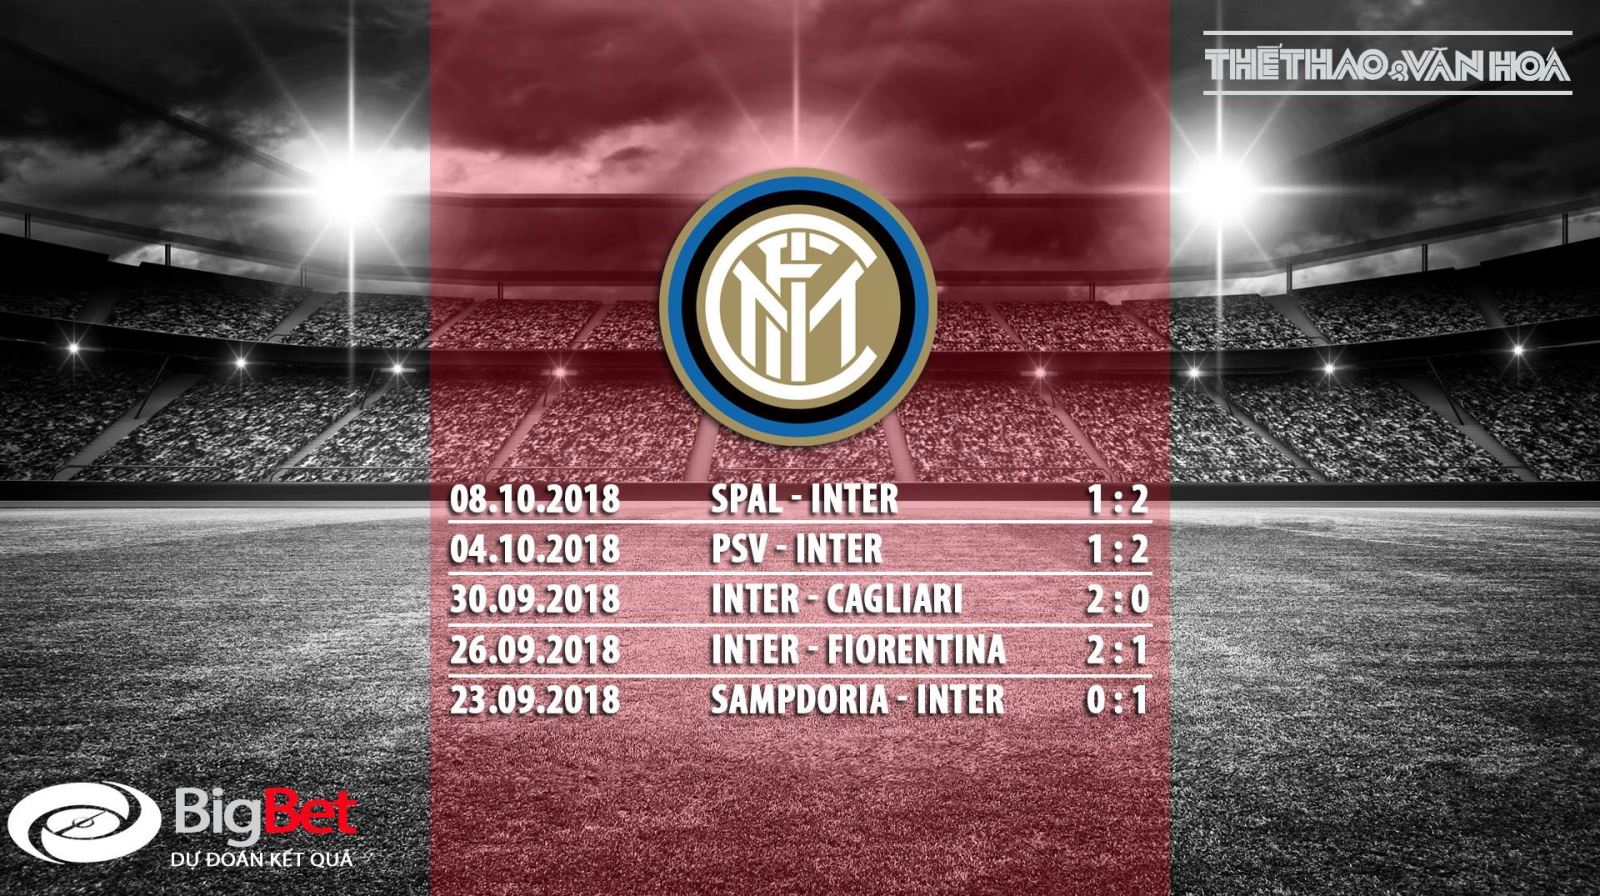 Nhận định bóng đá Inter Milan vs AC Milan (01h30 ngày 22/10) Vòng 9 Serie A 